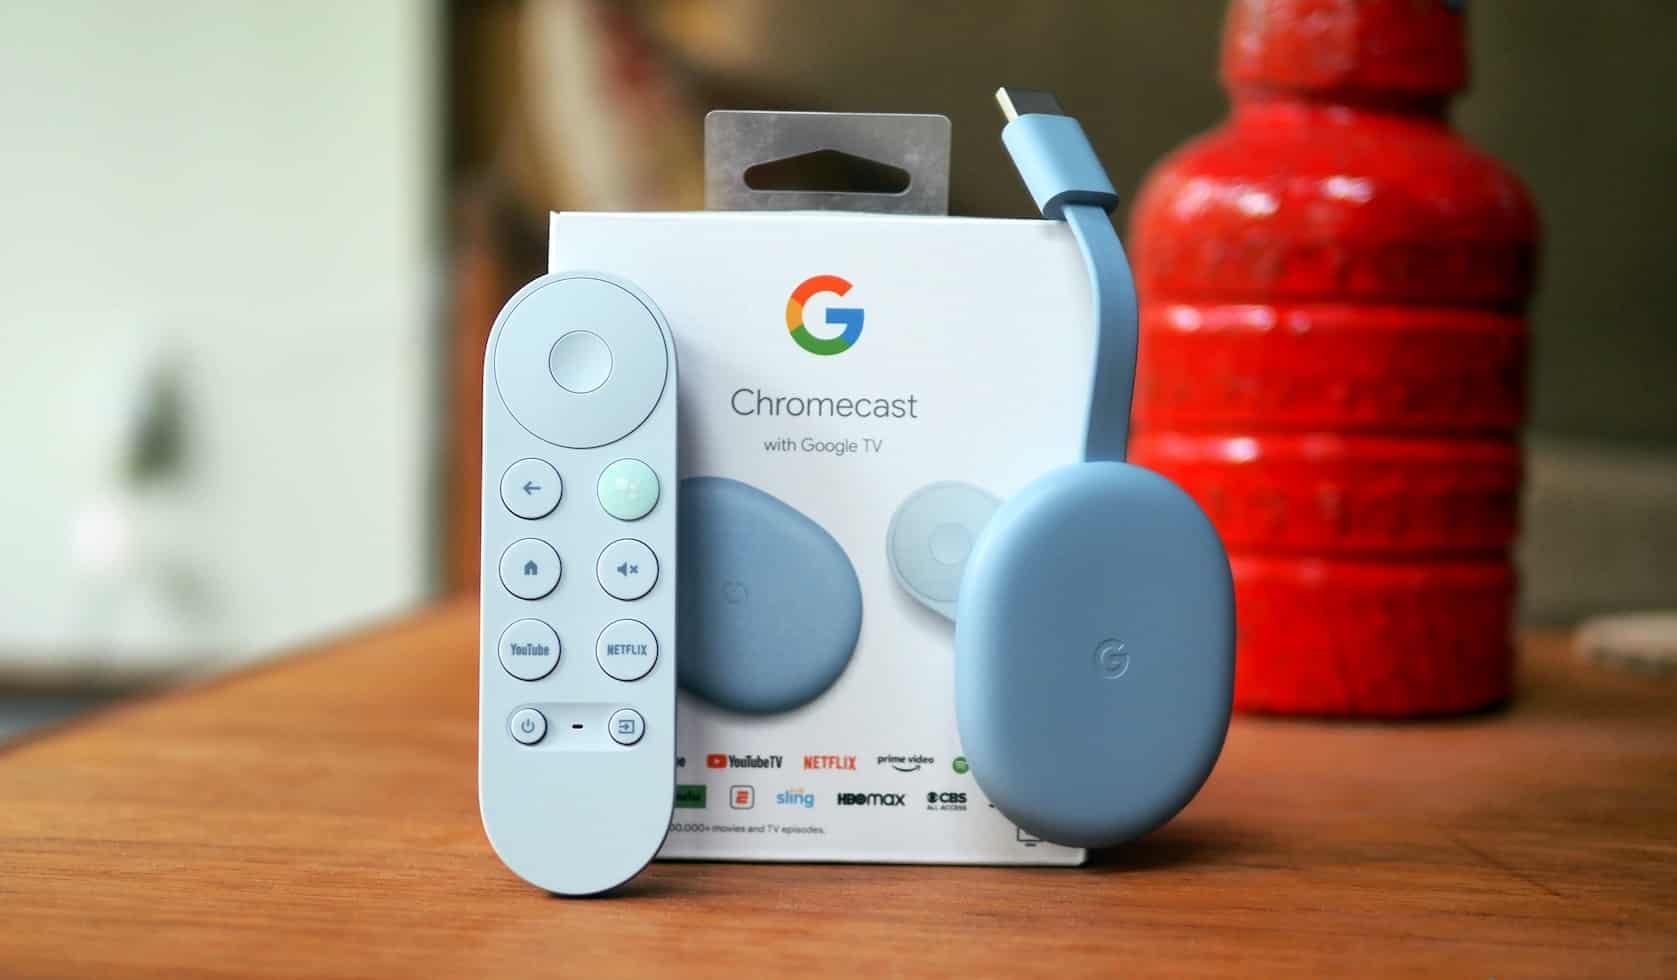 جهاز Chromecast الجديد يأتي بواجهة Google TV